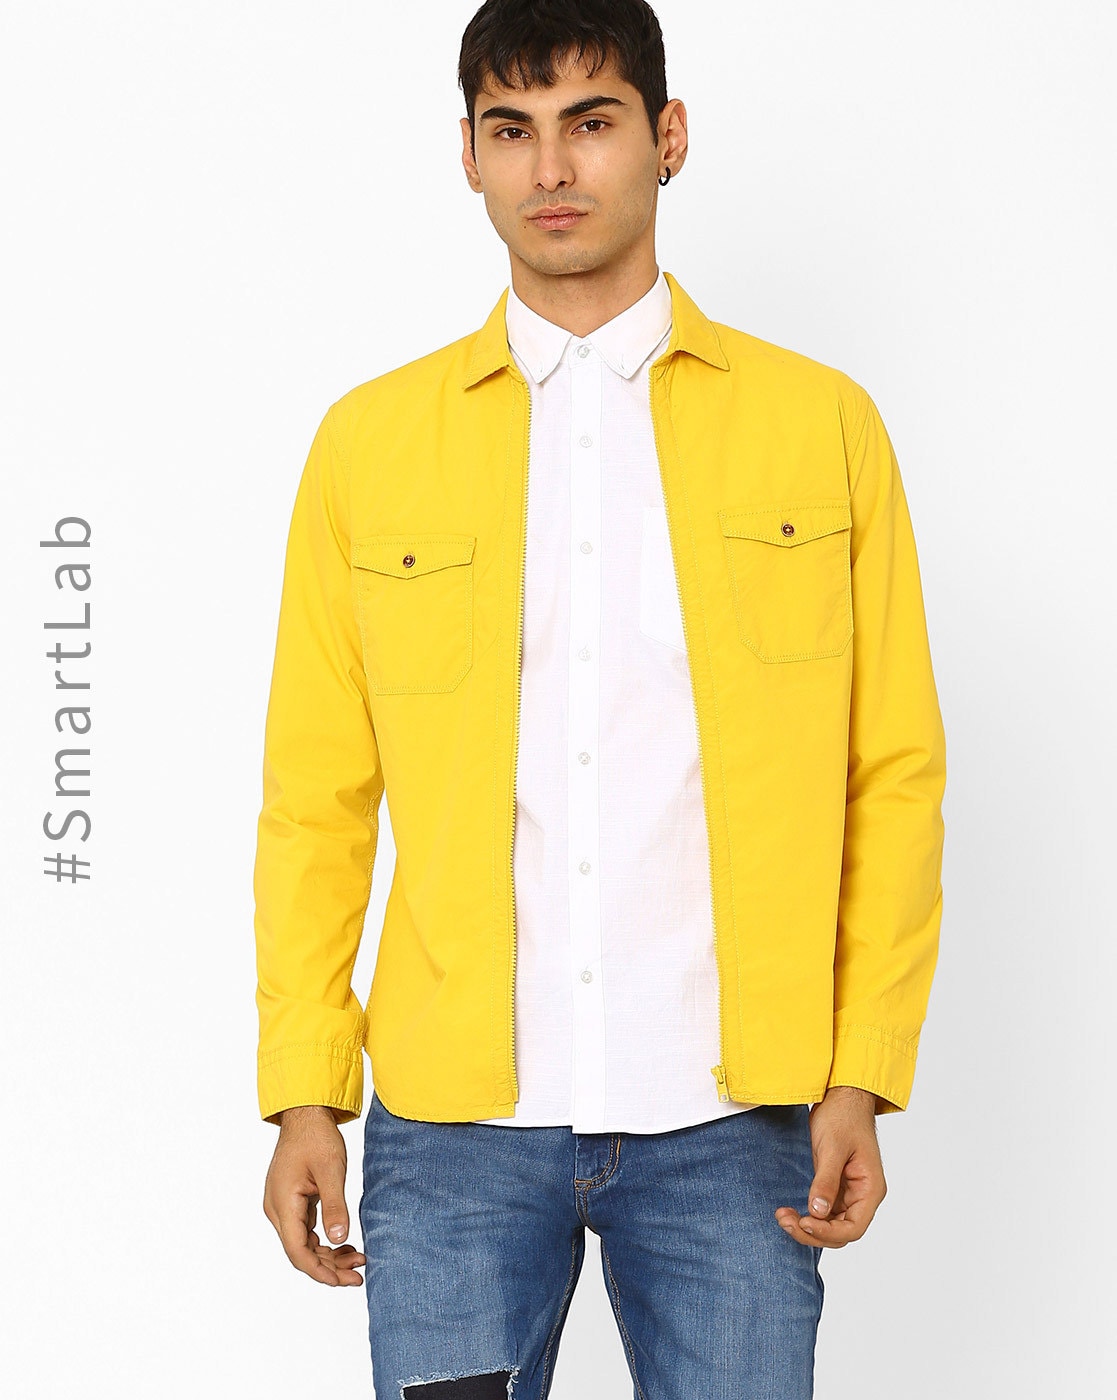 denim yellow shirt